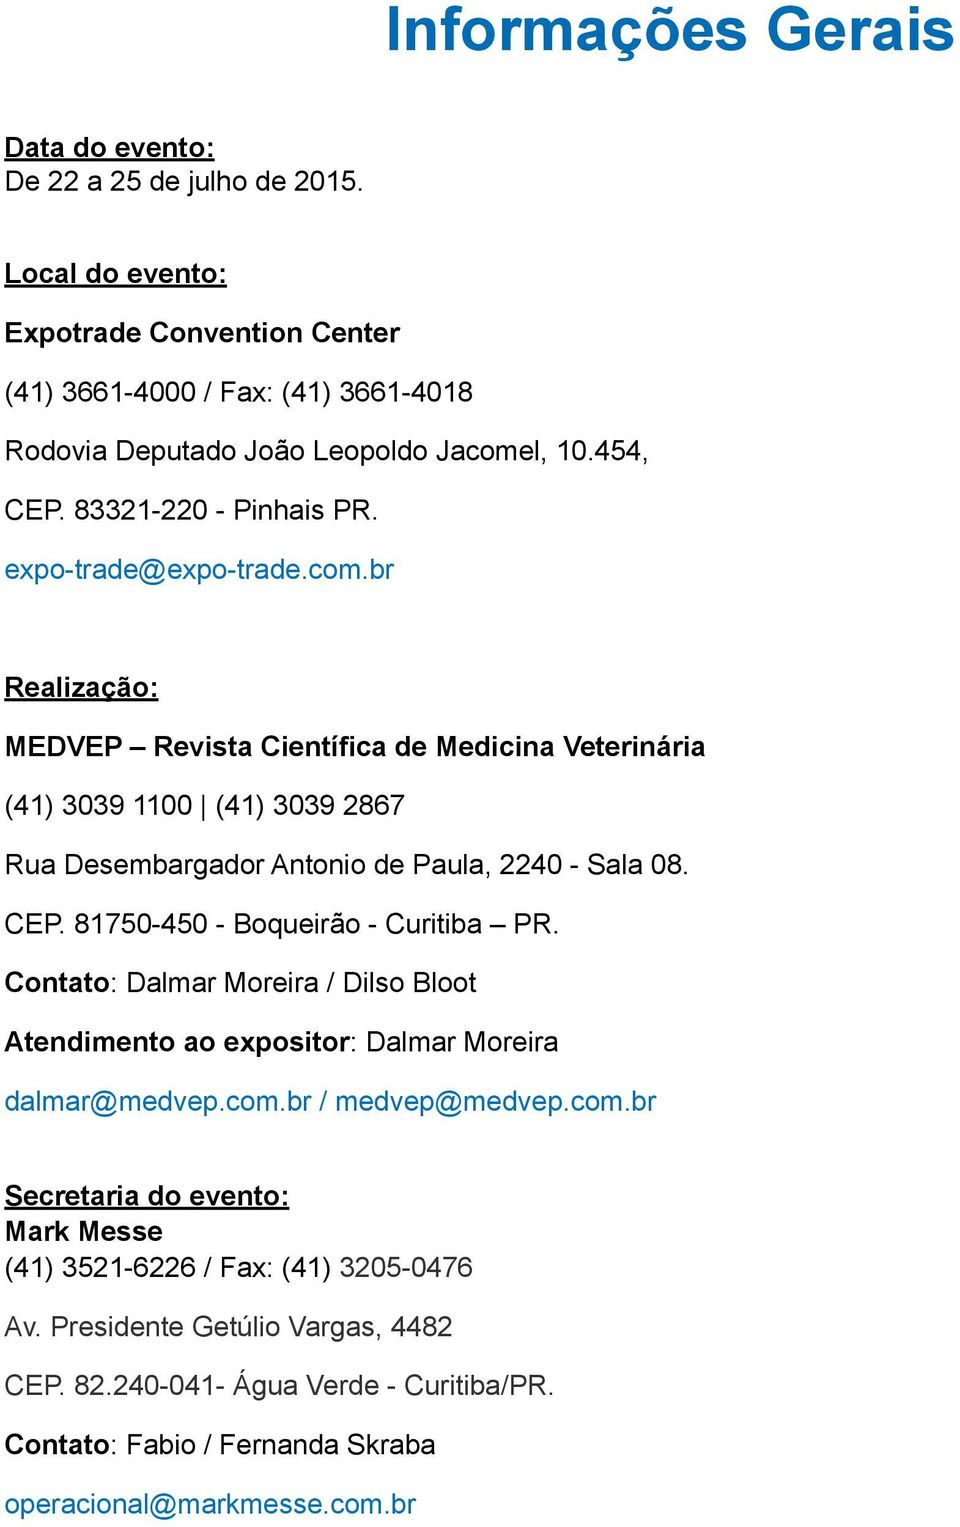 br Realização: MEDVEP Revista Científica de Medicina Veterinária (41) 3039 1100 (41) 3039 2867 Rua Desembargador Antonio de Paula, 2240 - Sala 08. CEP. 81750-450 - Boqueirão - Curitiba PR.